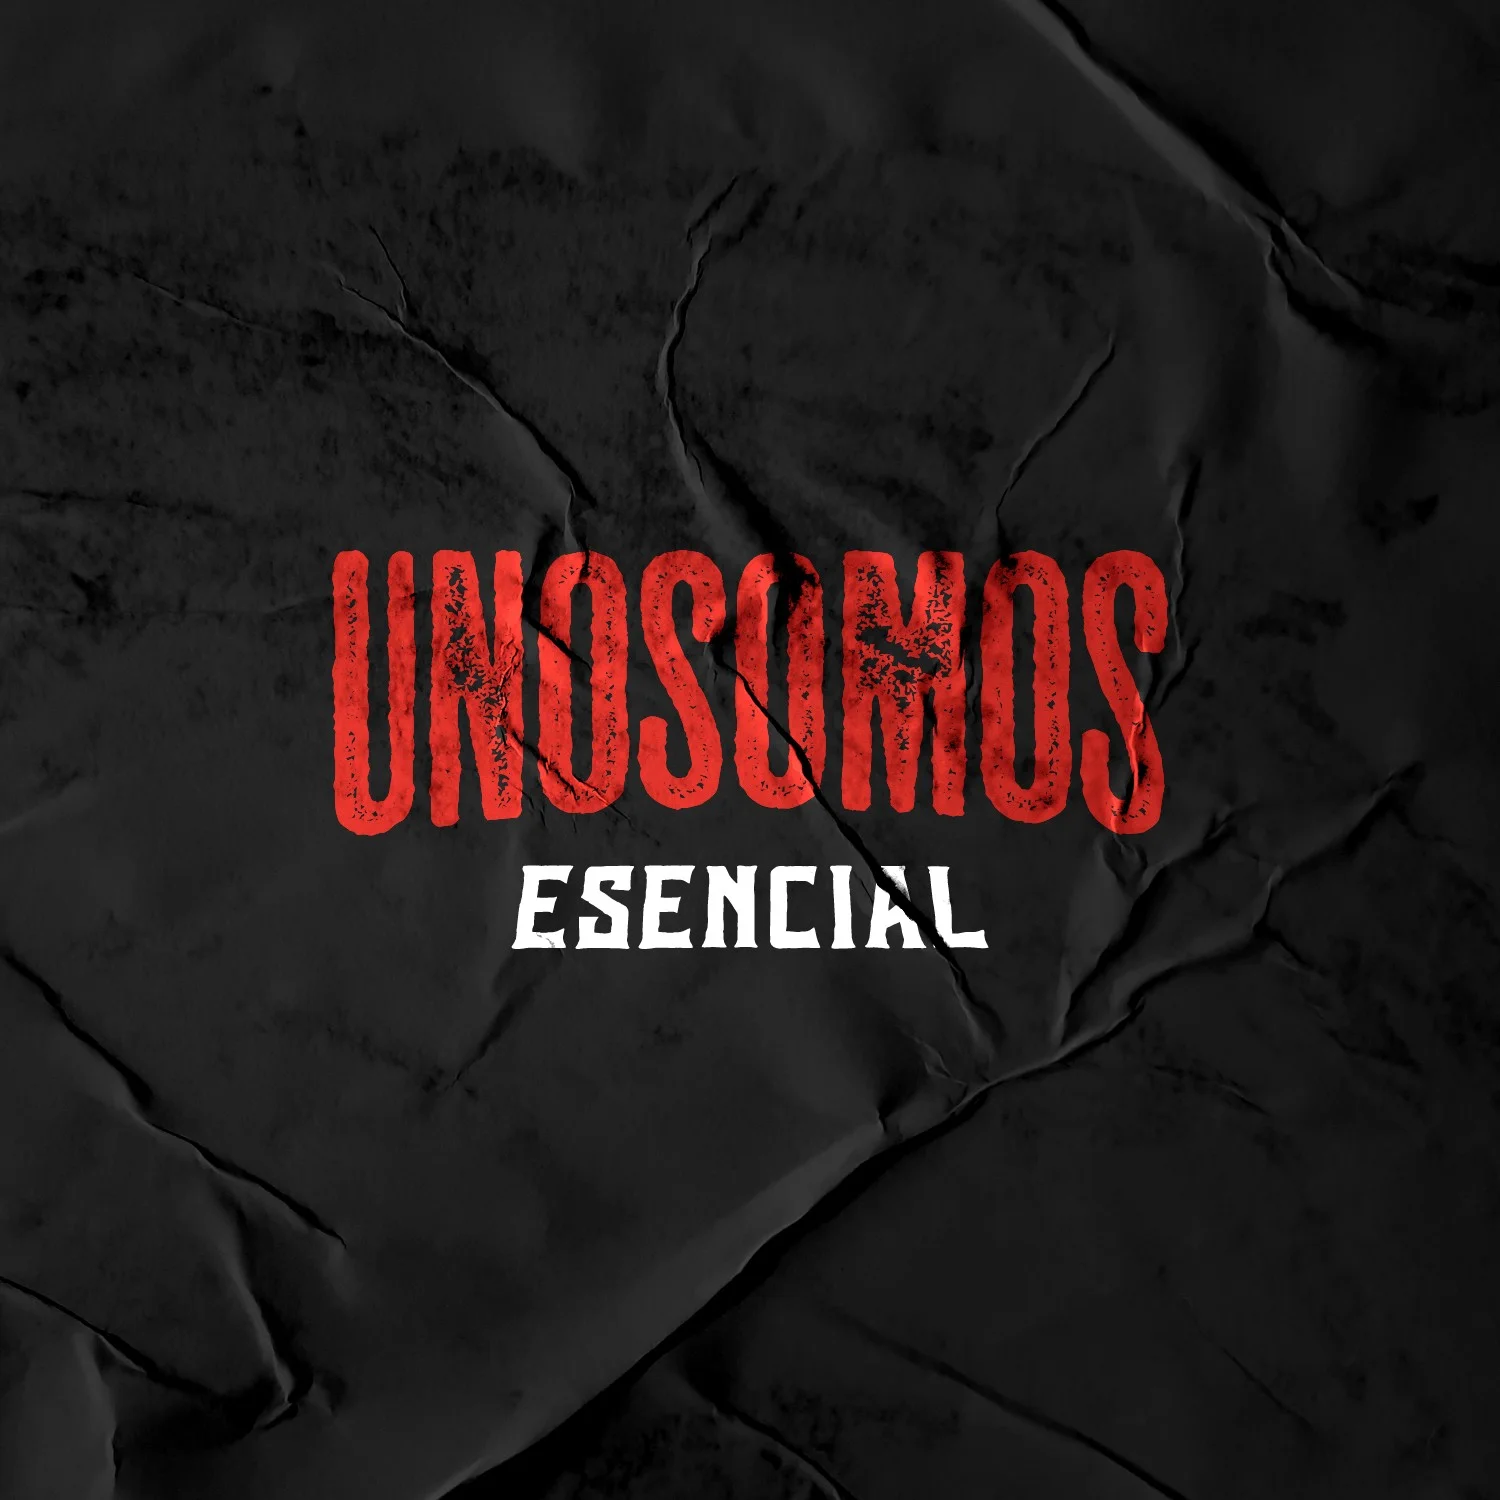 UNOSOMOS Esencial (Playlist)